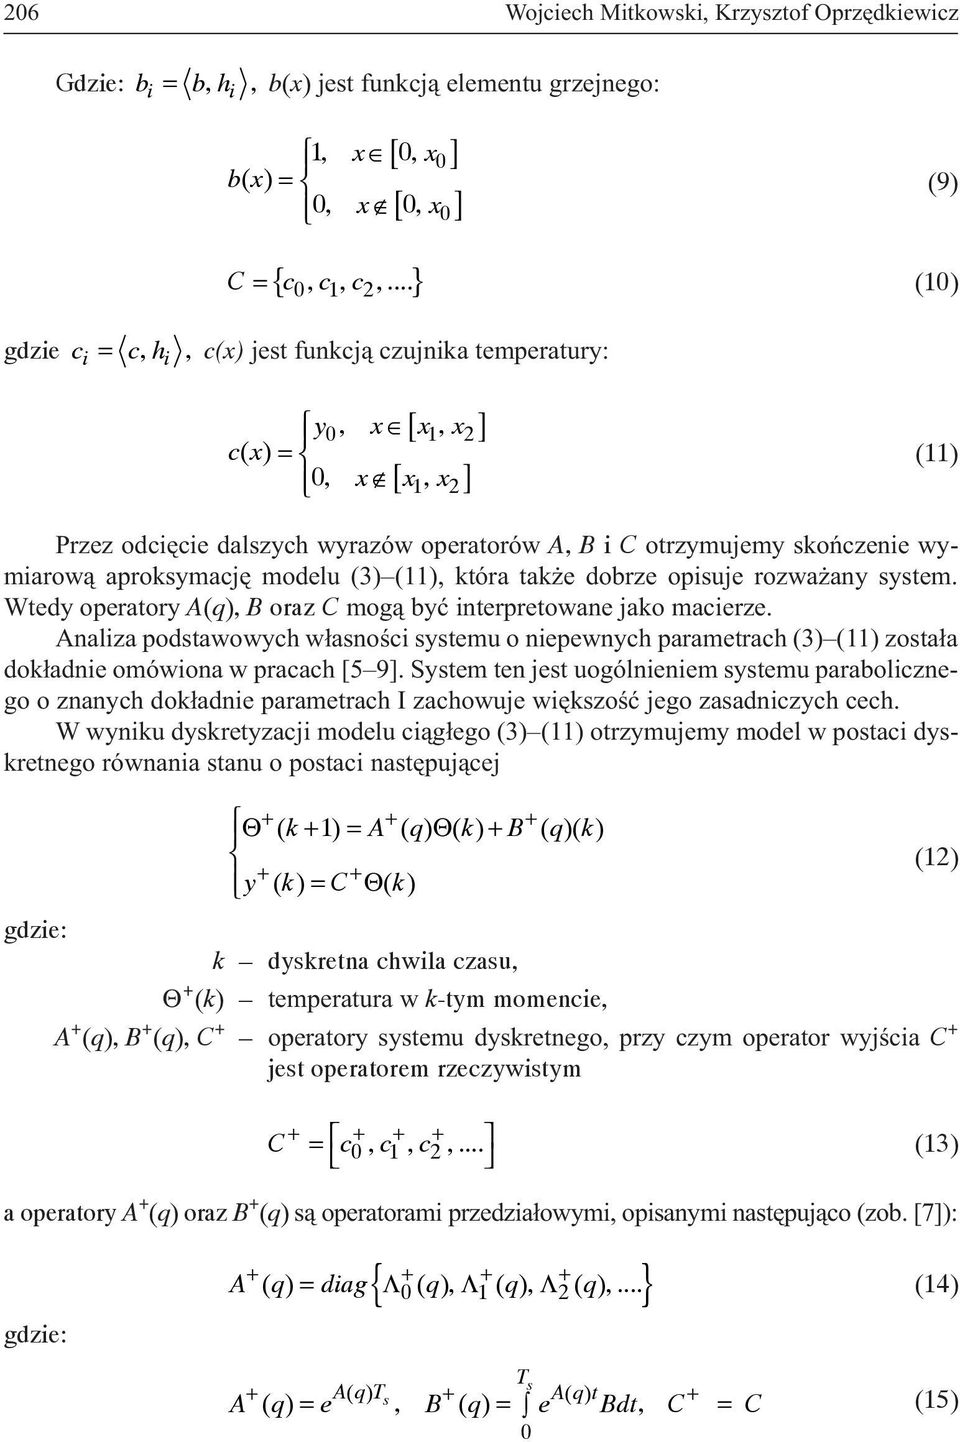 skoñczenie wymiarow¹ aproksymacjê modelu (3) (11), która tak e dobrze opisuje rozwa any system. Wtedy operatory A(), B oraz C mog¹ byæ interpretowane jako macierze.